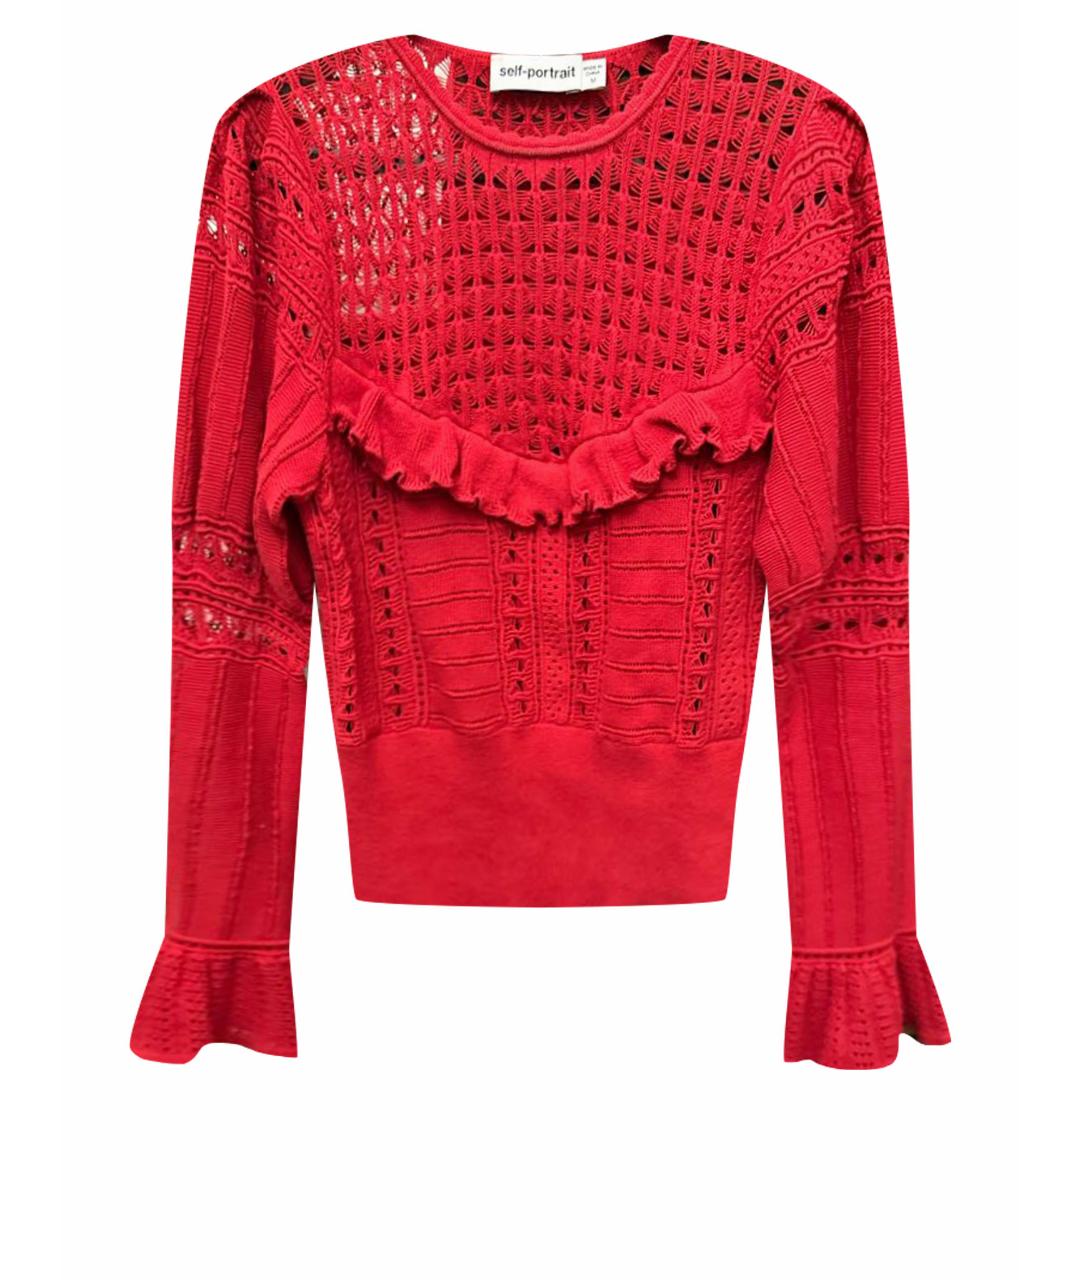 SELF-PORTRAIT Красный хлопковый джемпер / свитер, фото 1